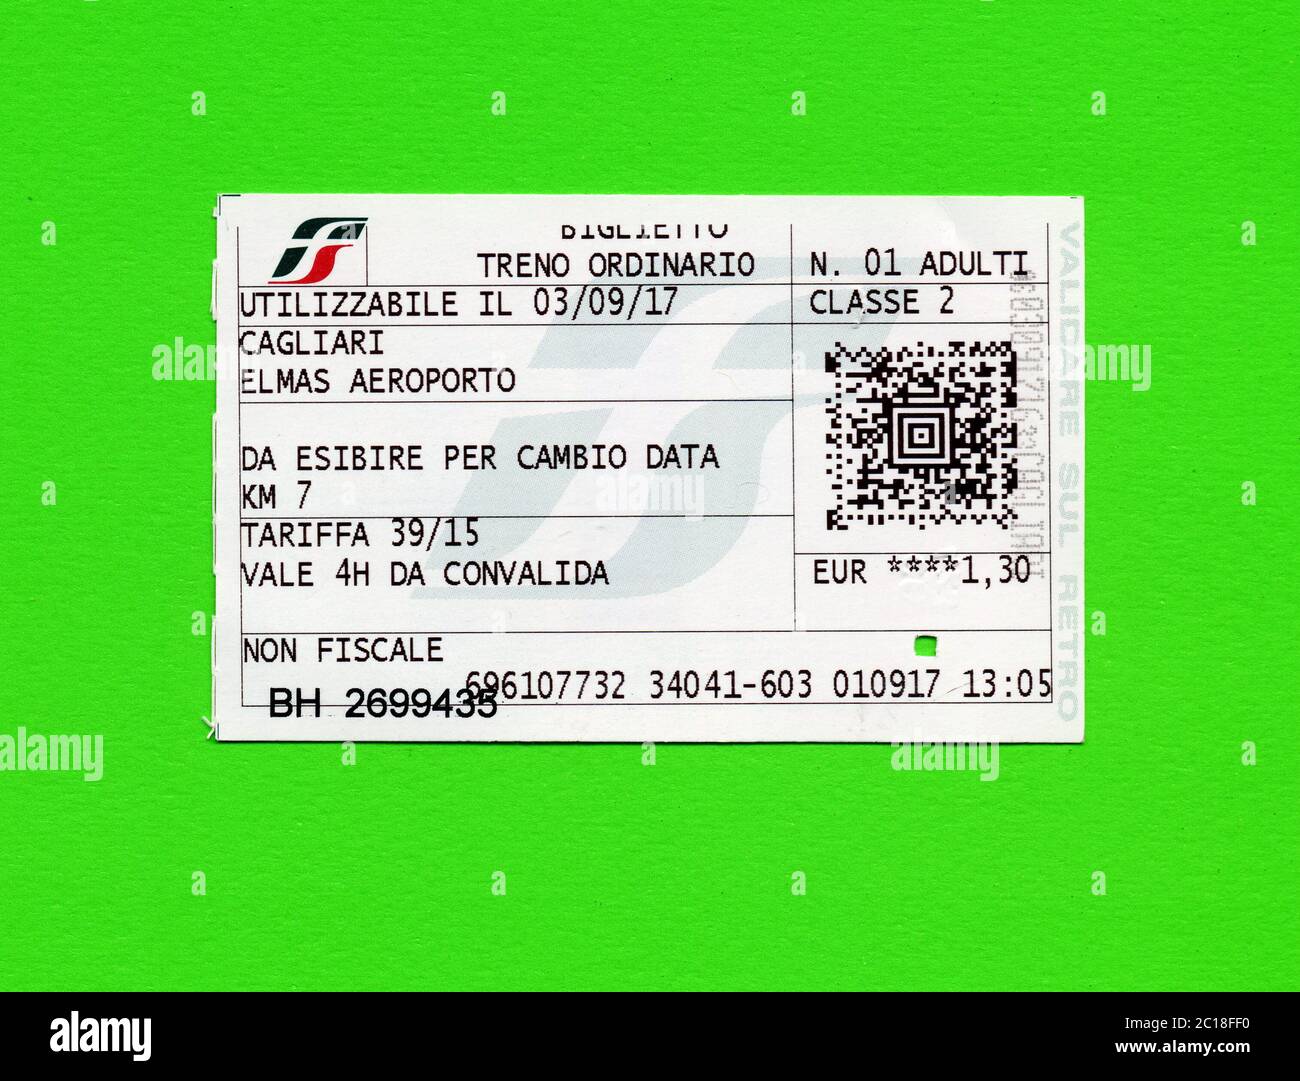 Italian train ticket for Cagliari airport Stock Photo